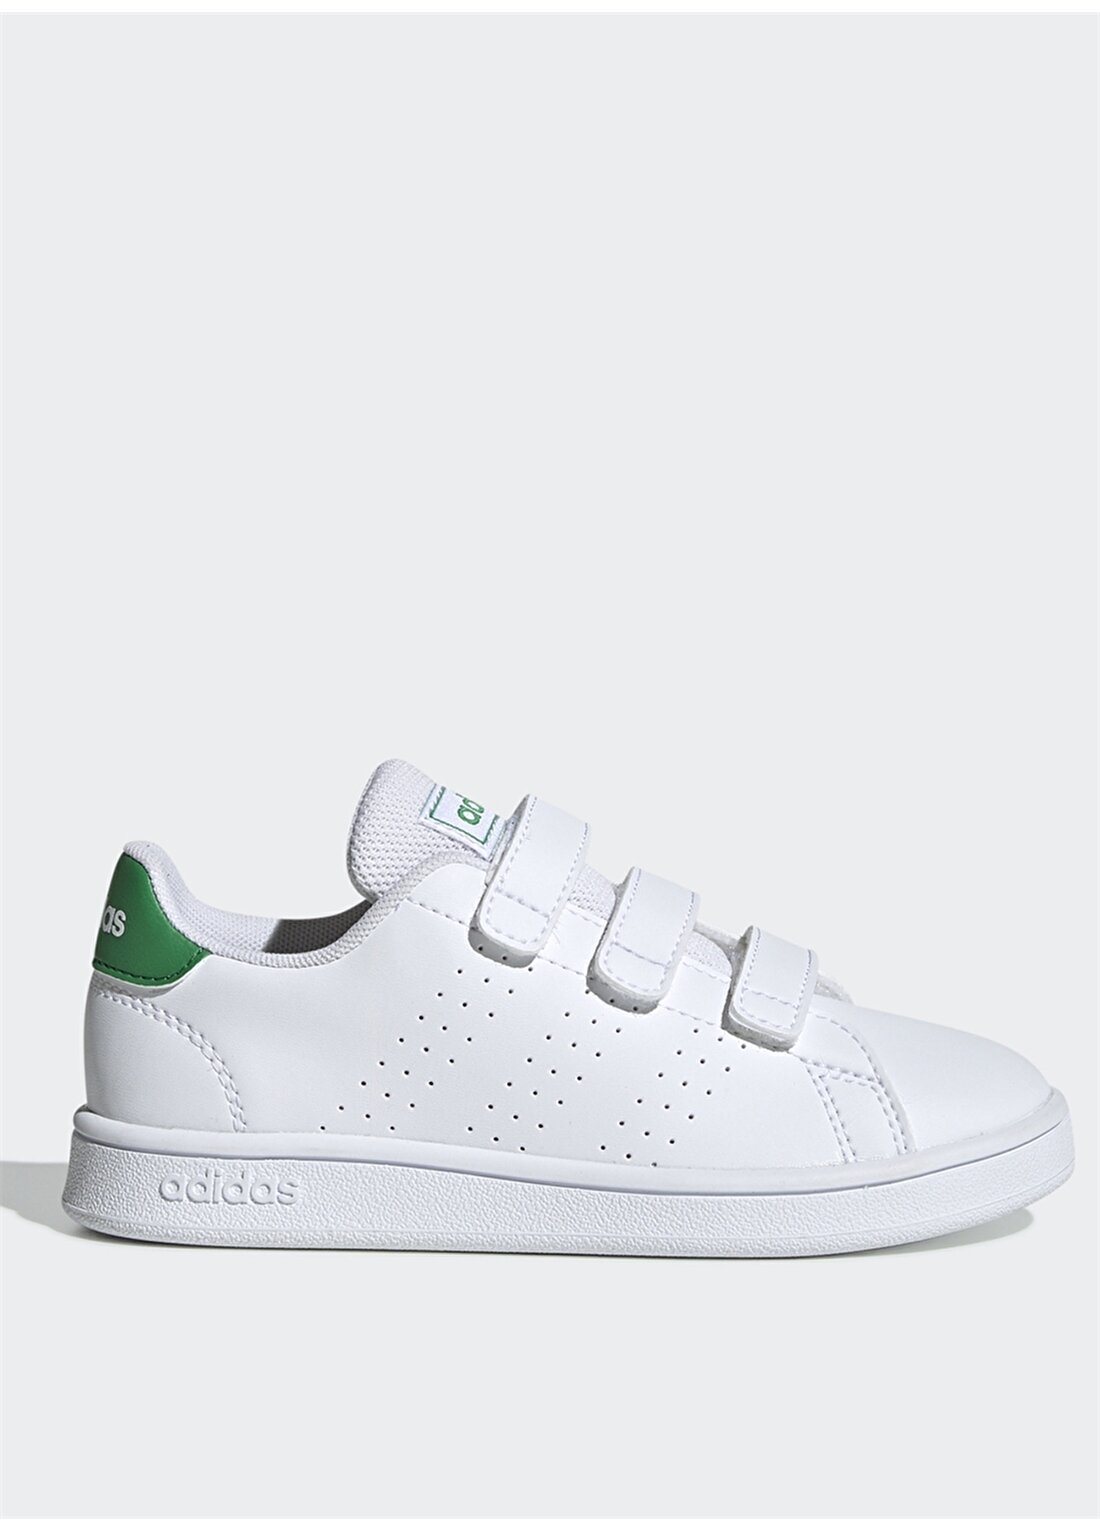 Adidas EF0223 Advantage C Beyaz-Yeşil Çocuk Yürüyüş Ayakkabısı